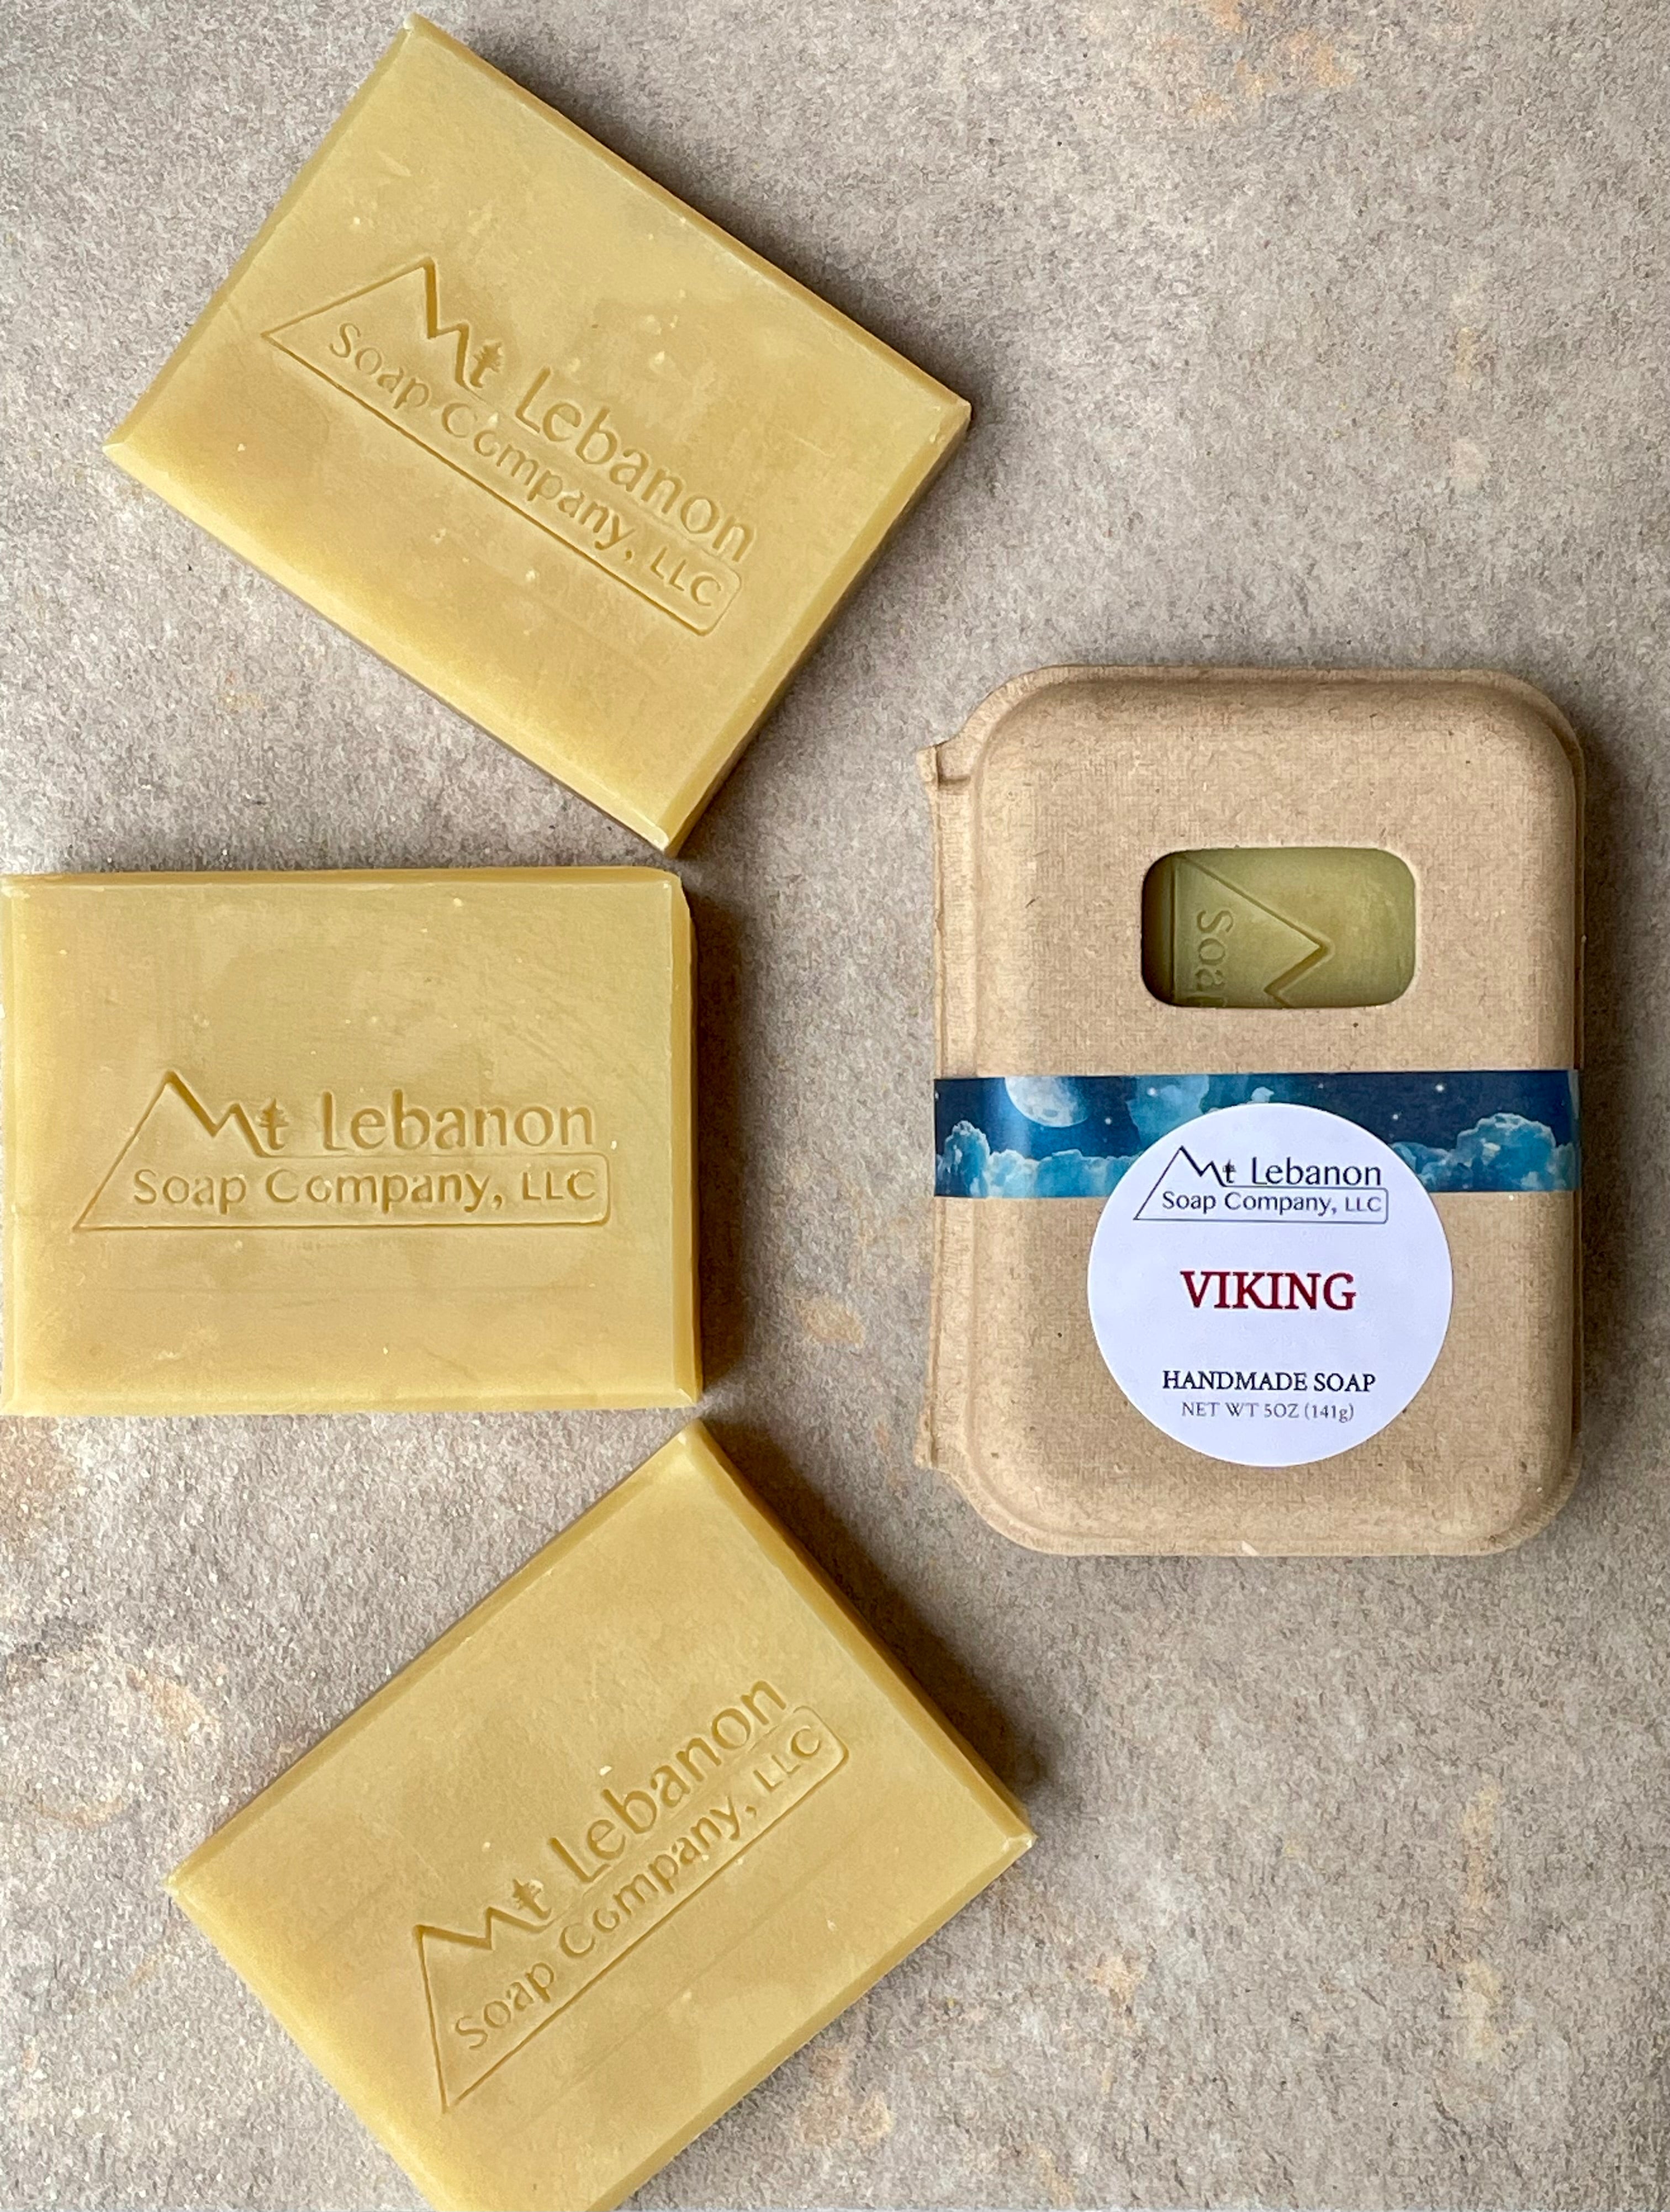 Viking Handmade Bar Soap